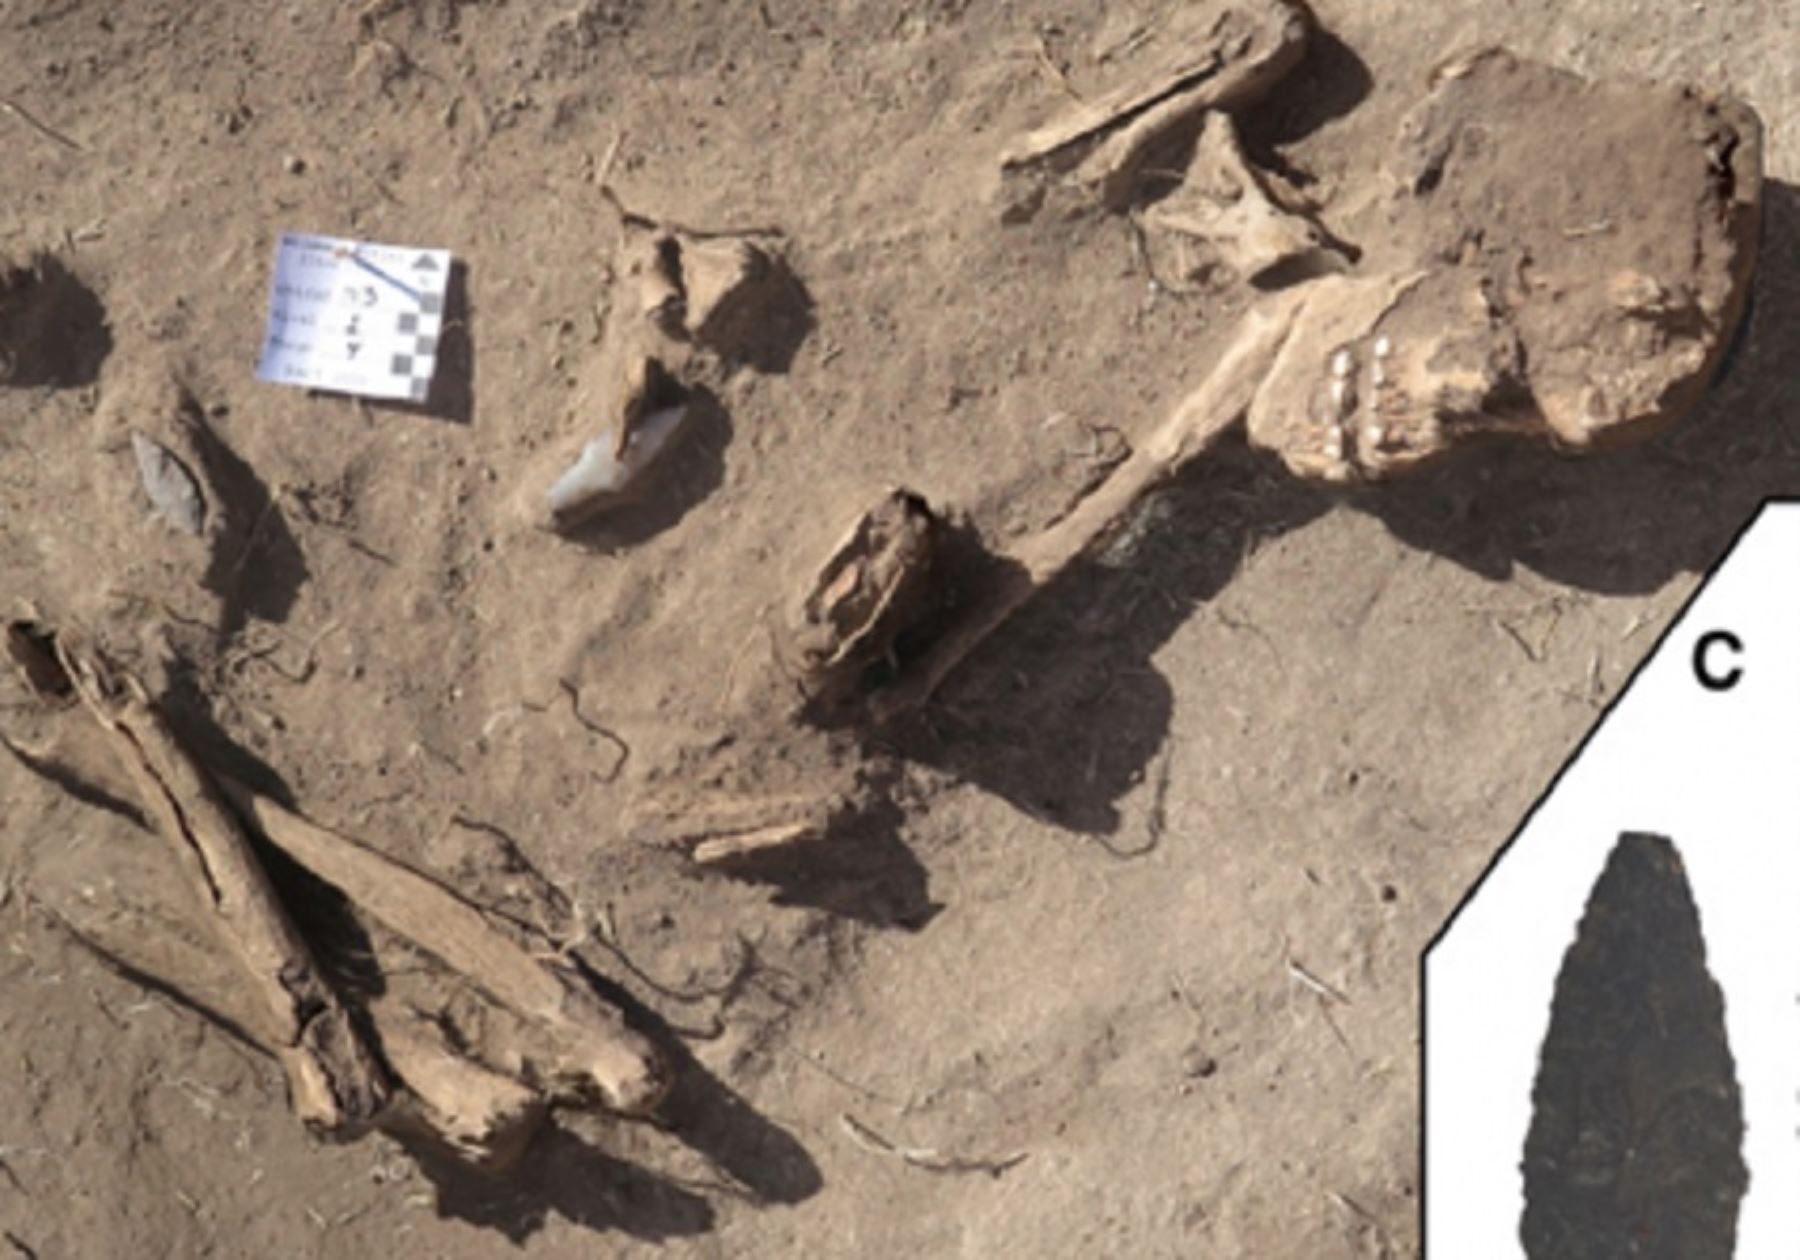 La concepción sobre los primeros seres humanos como "cazadores-recolectores" debería invertirse por "recolectores-cazadores", por lo menos en los Andes sudamericanos, según revela la investigación de un equipo de arqueólogos de la Universidad de Wyoming tras analizar osamentas descubiertas en un cementerio prehistórico en la región Puno.